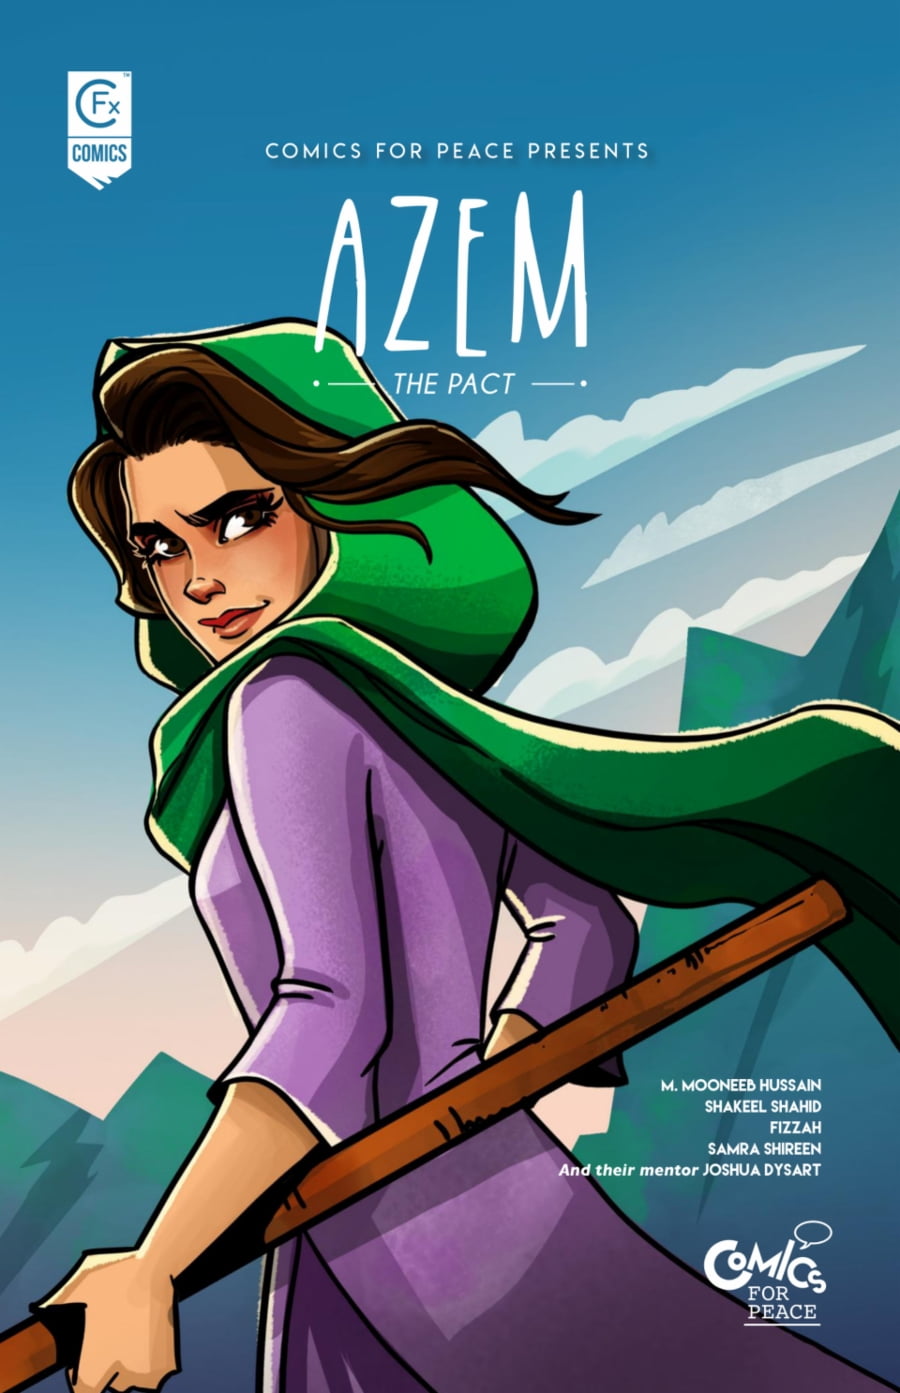 CFx Comics | Azem: The Pact #1 page 1 | Spinwhiz Comics